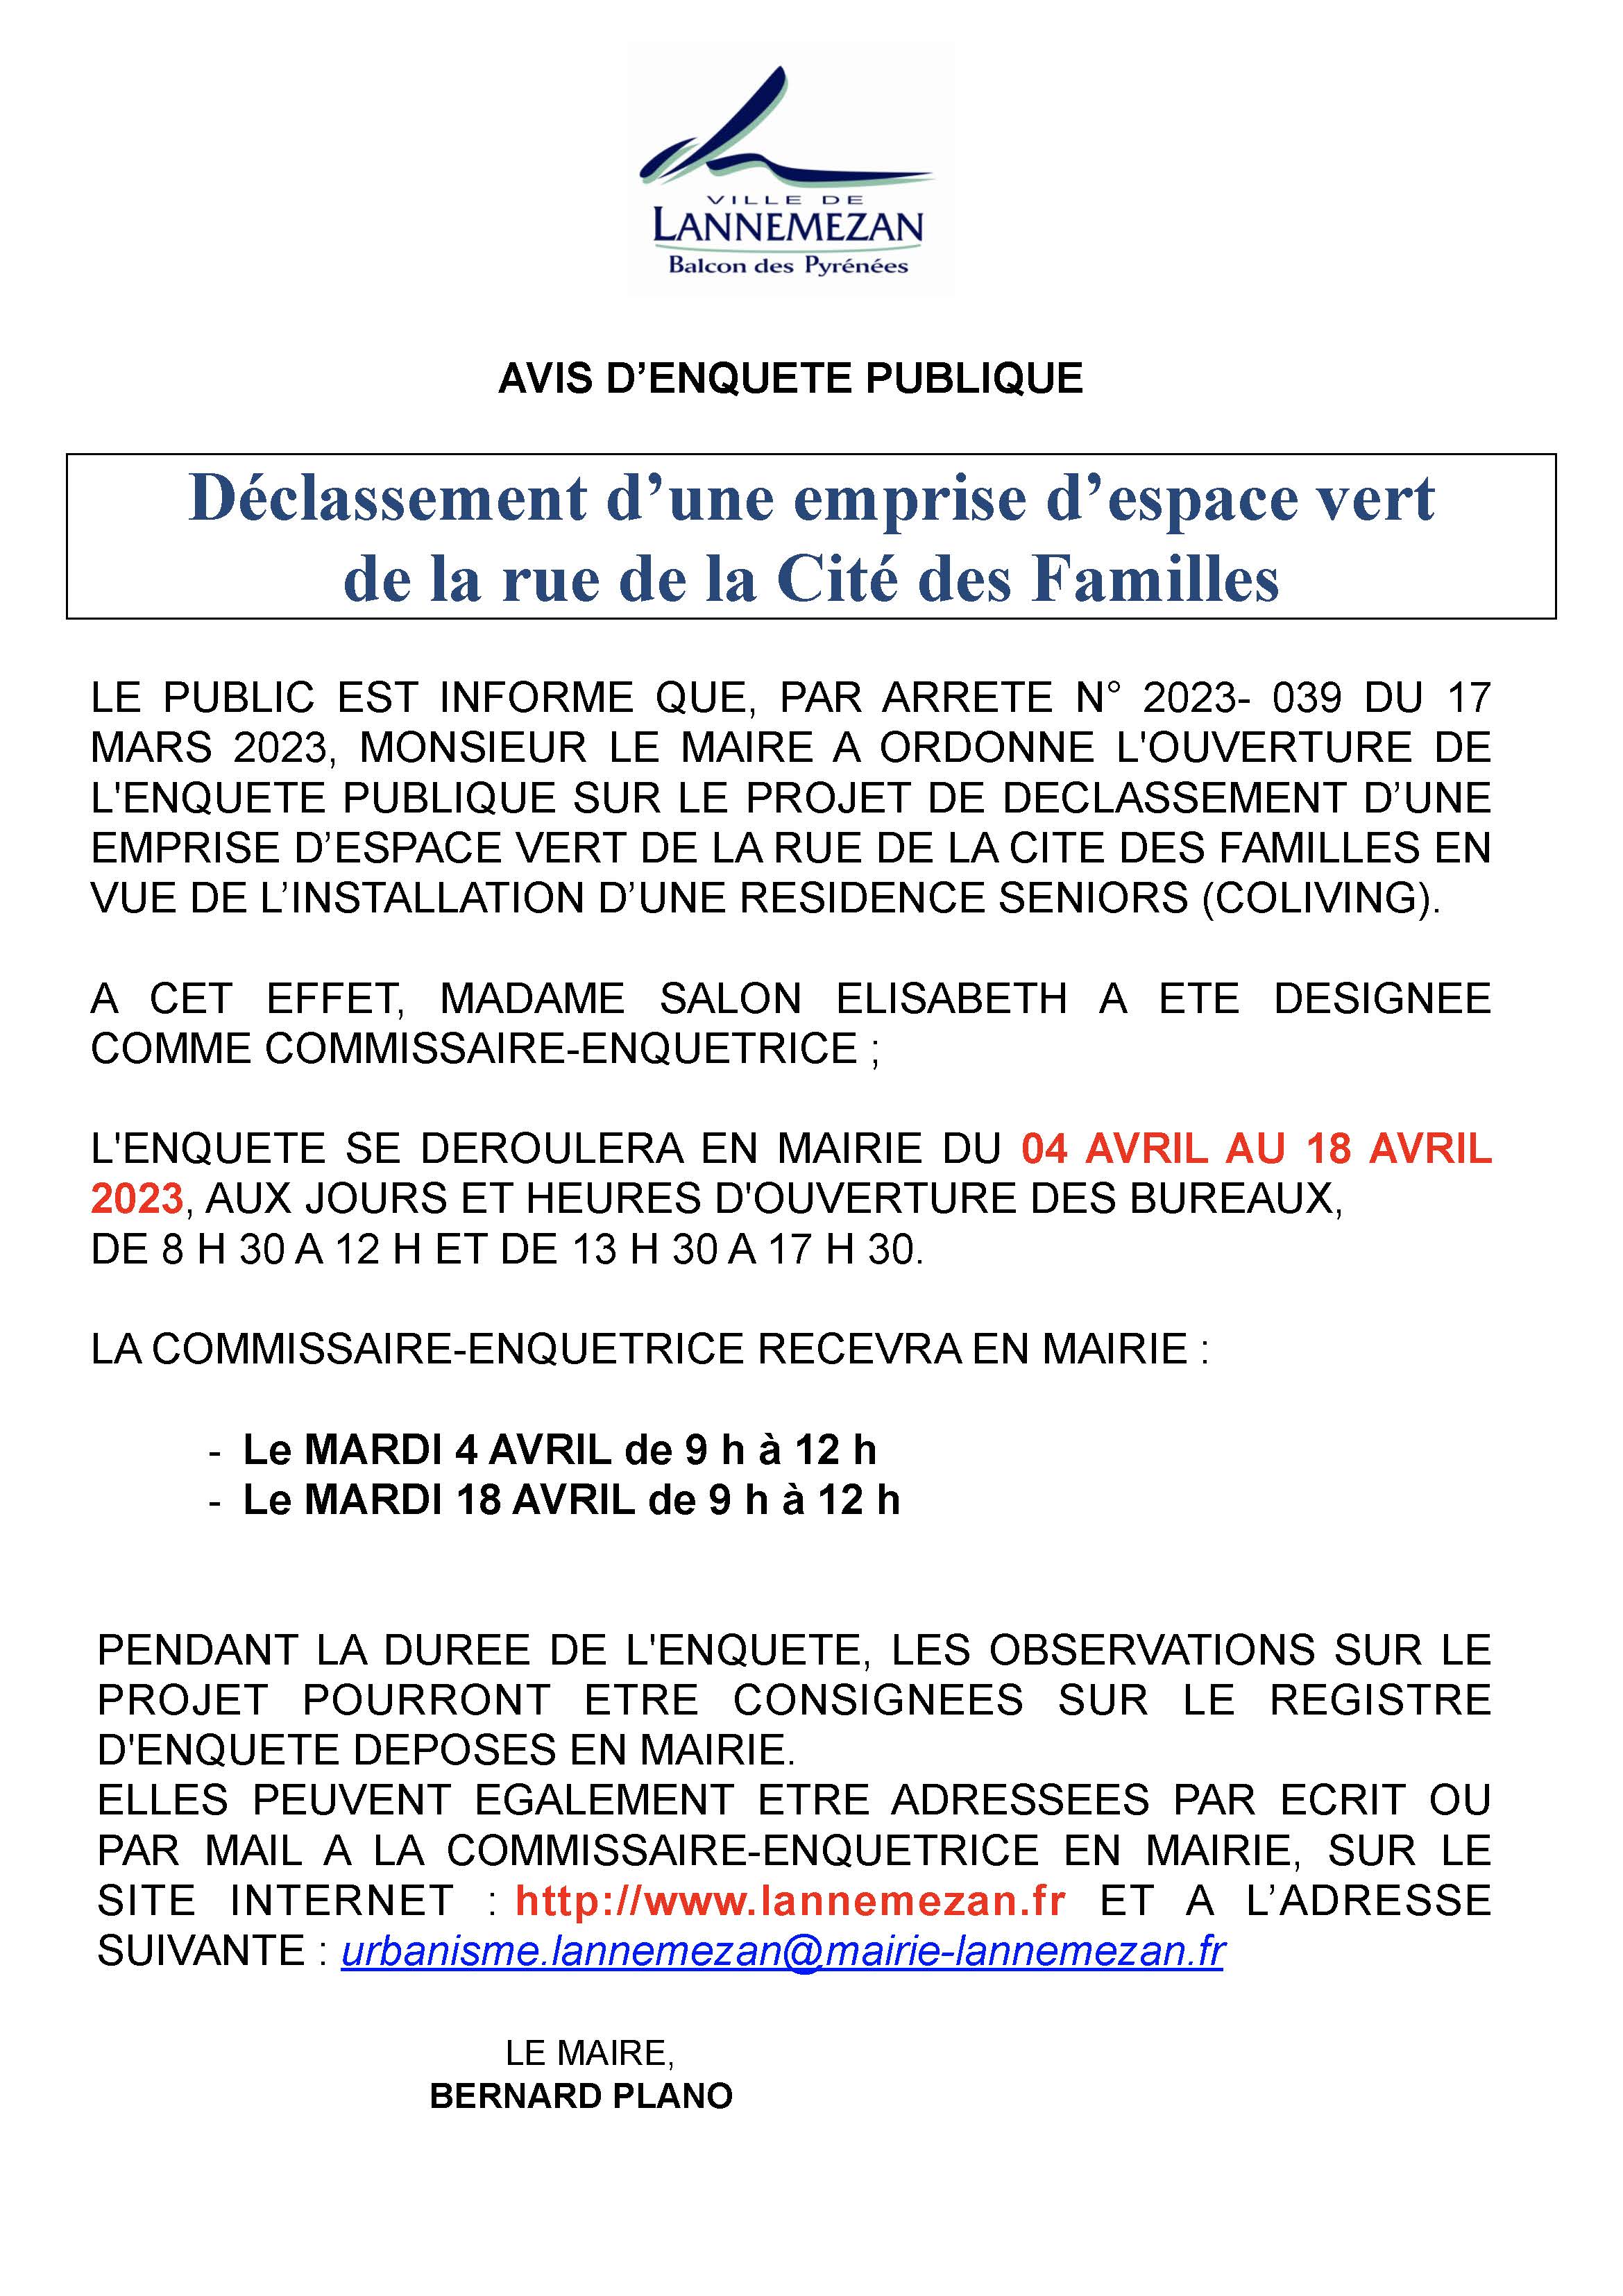 AVIS ENQUETE DECLASSEMENT 2023 - Cité des Familles.jpg